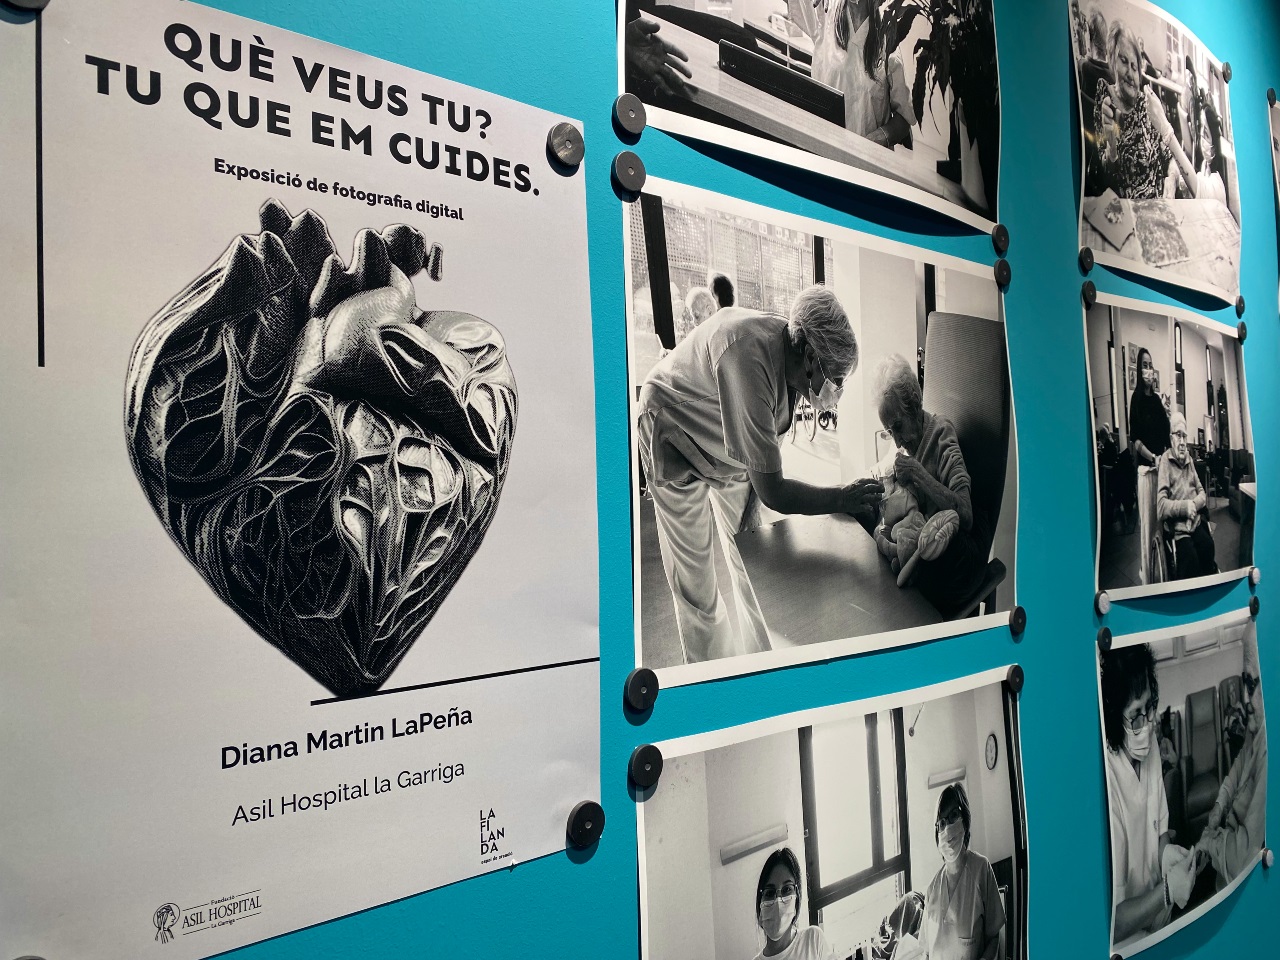 Una exposició retrata la vida quotidiana dins l’Asil Hospital La Garriga